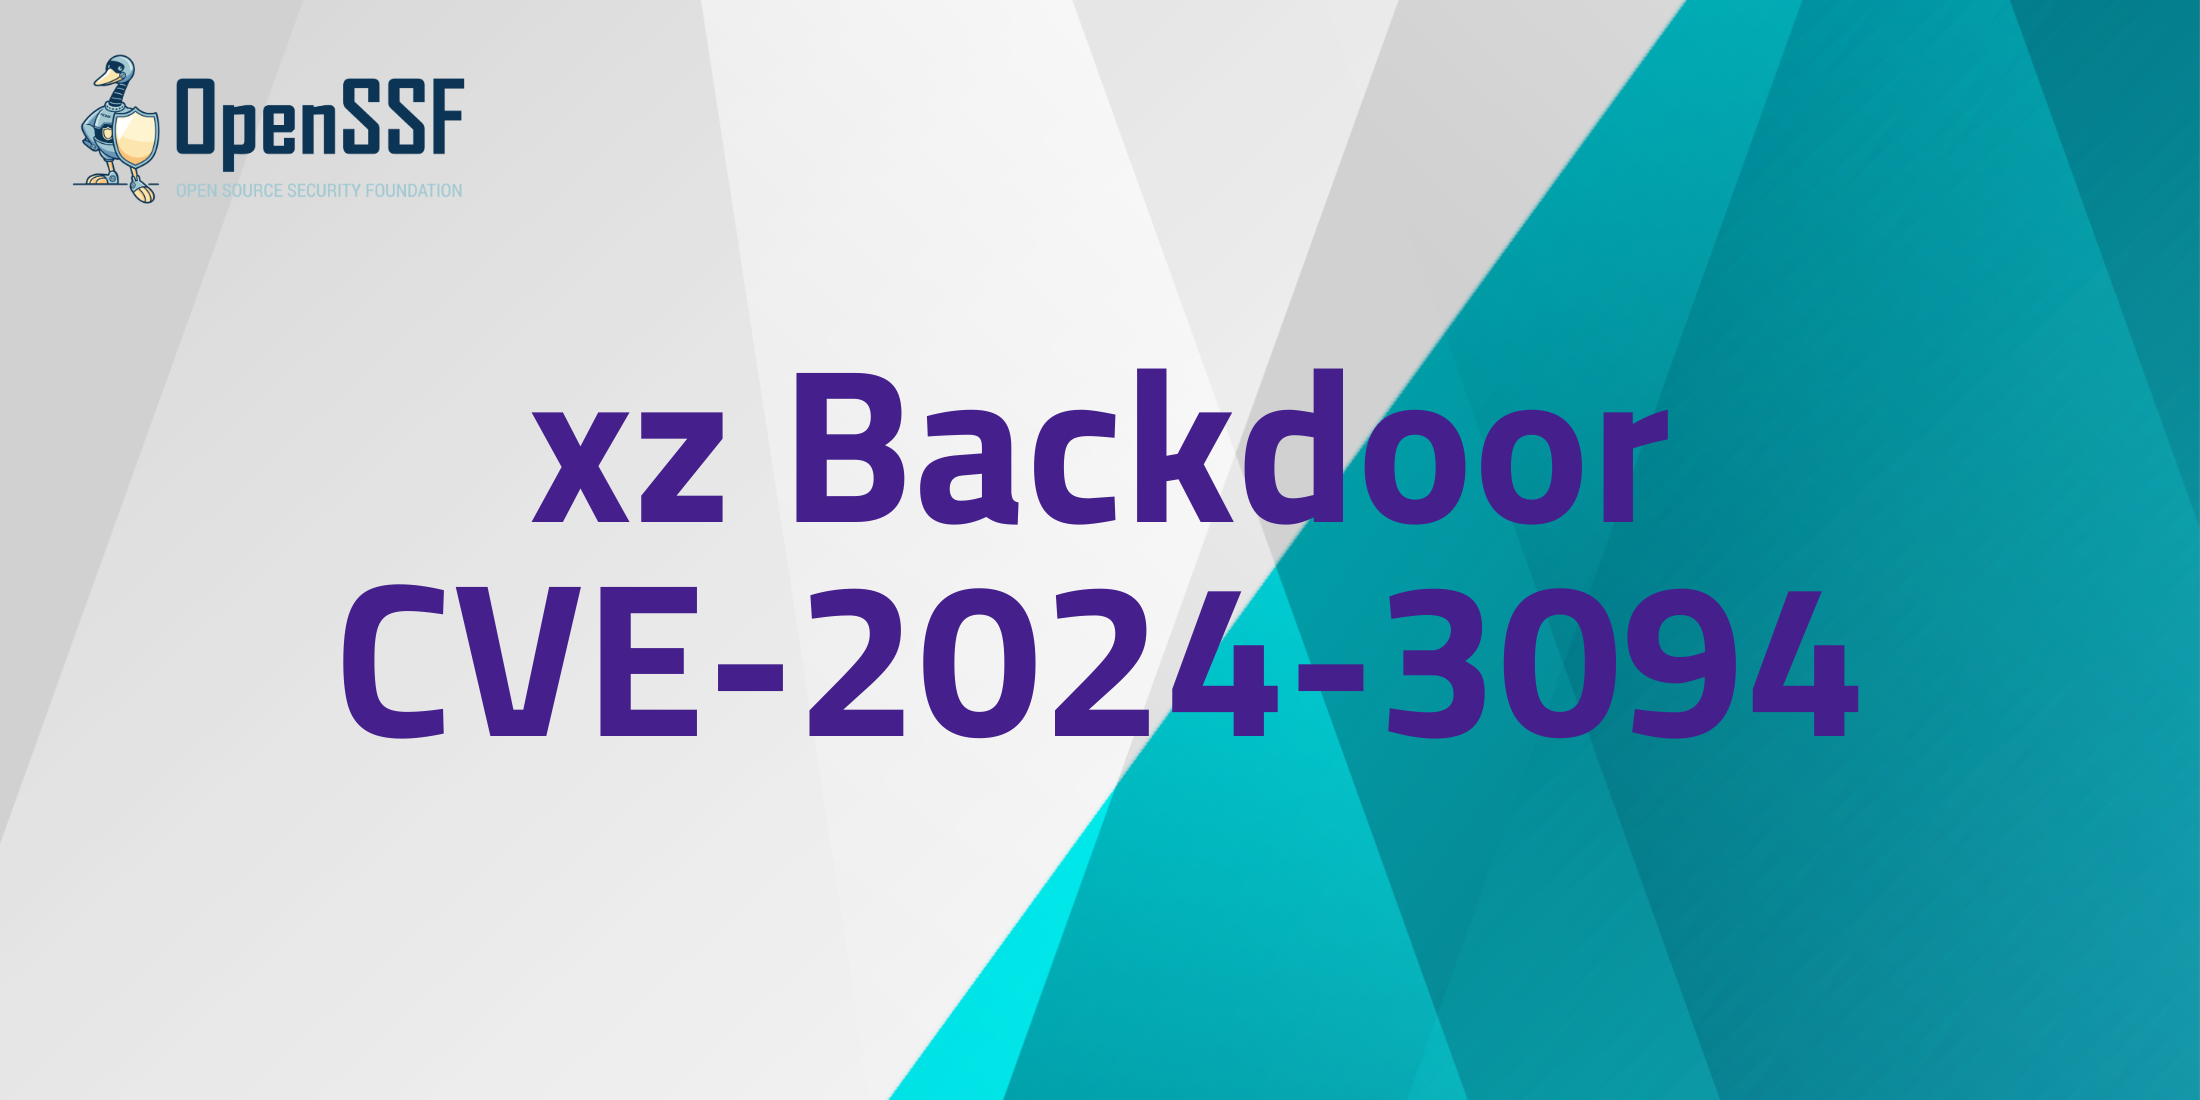 xz Backdoor CVE-2024-3094